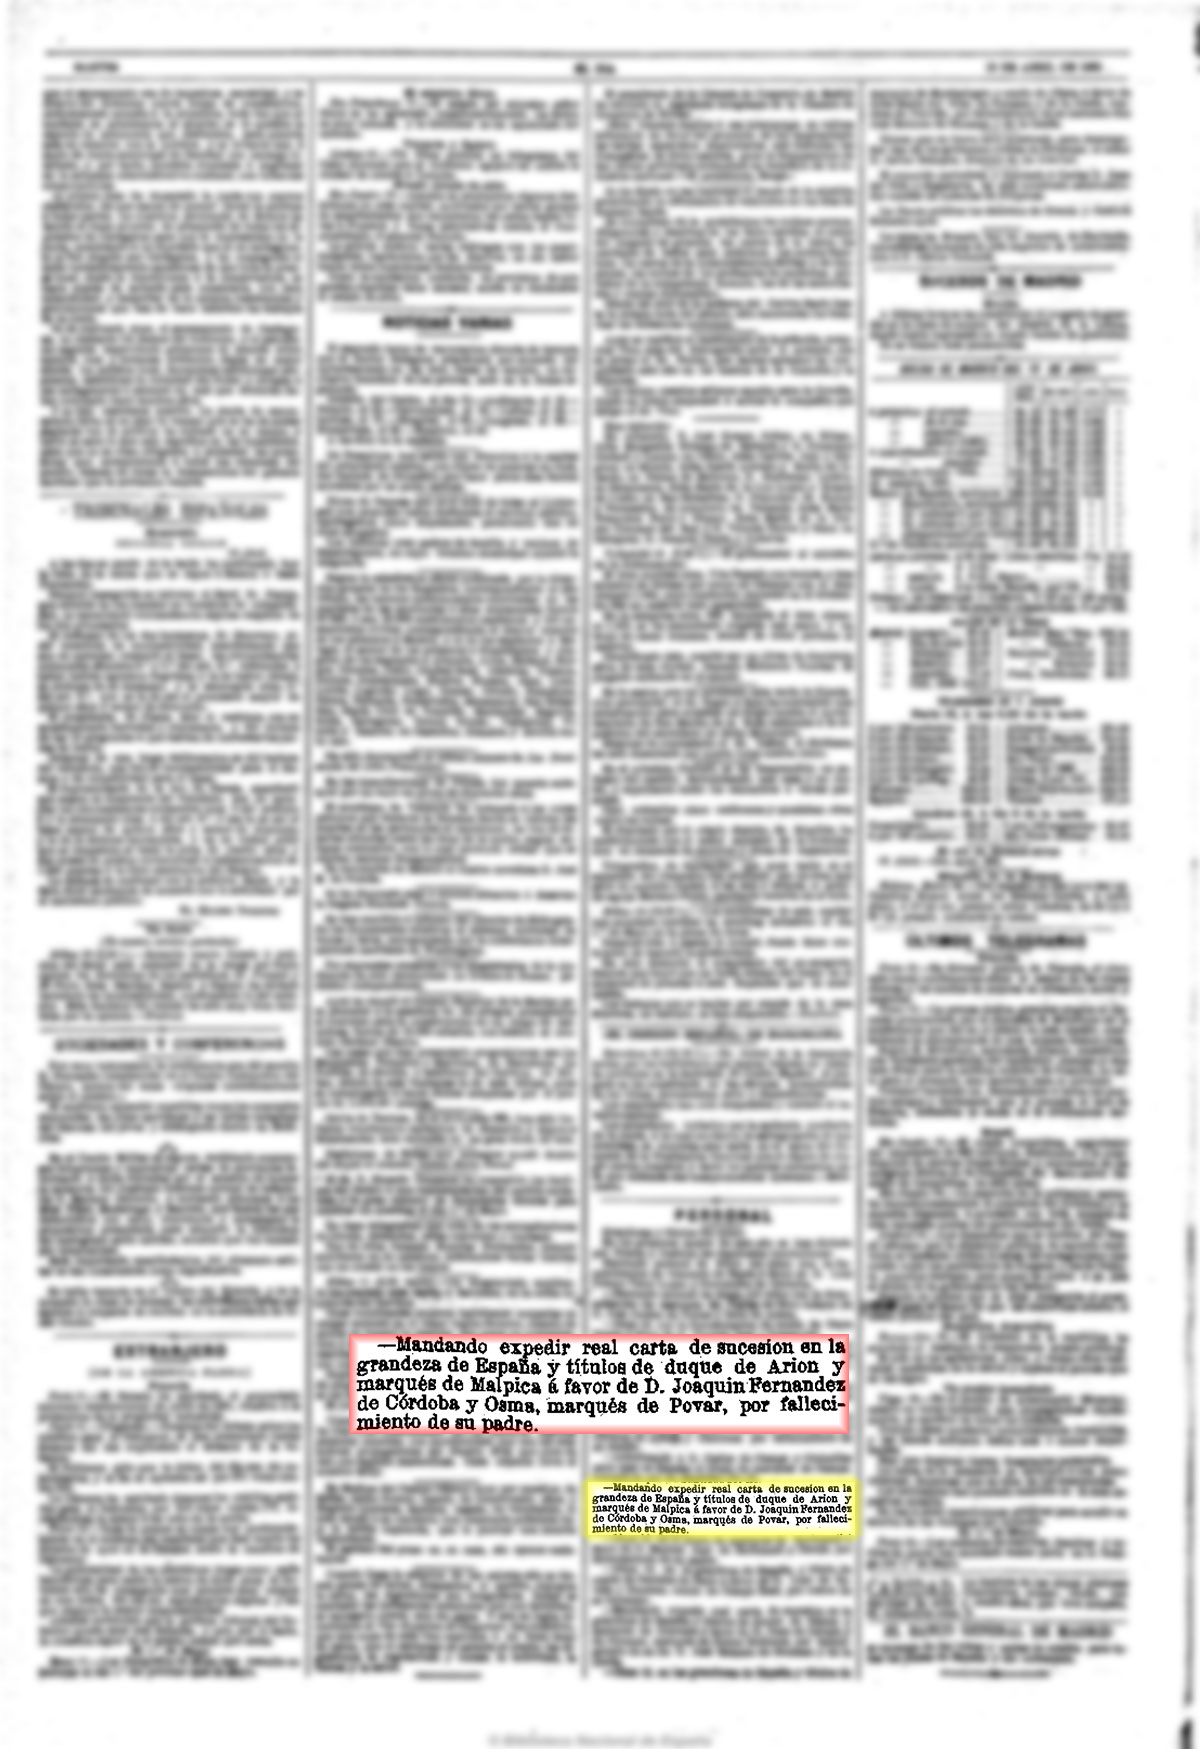 El Imparcial 13-4-1892, página 1. Nombrado sucesor del Marqués de Malpica